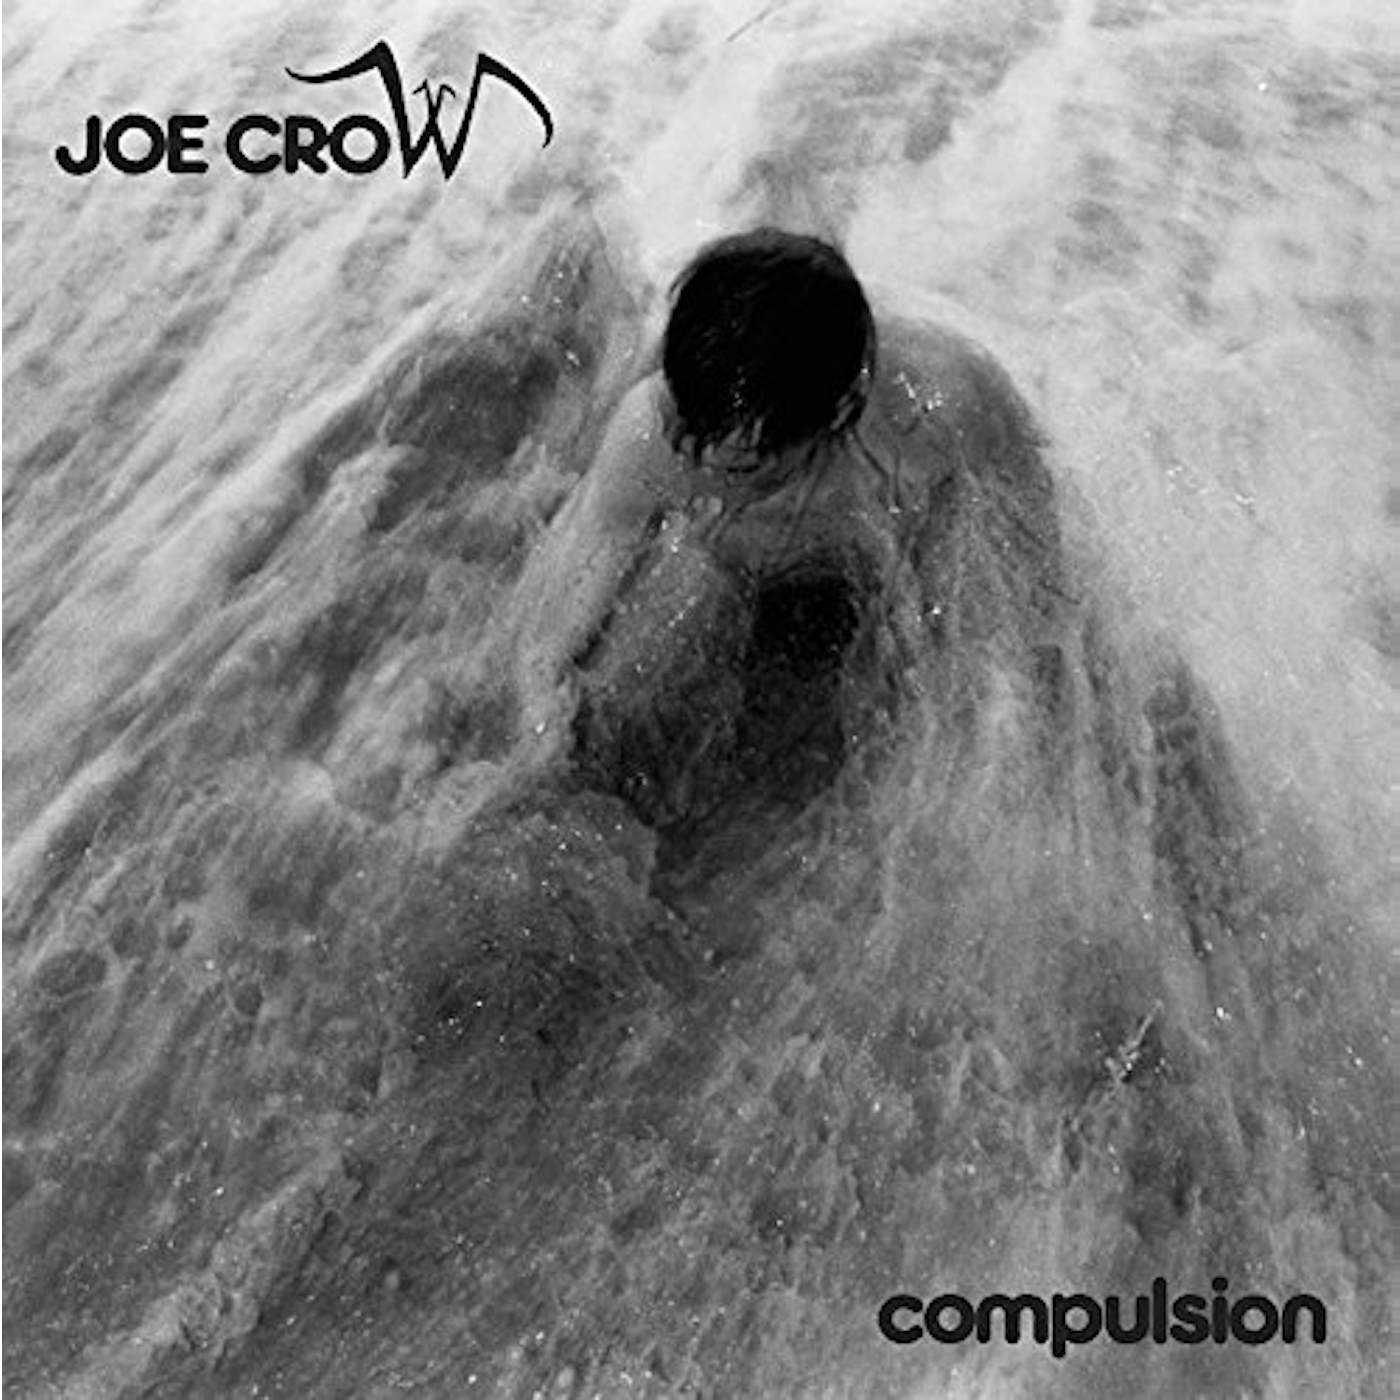 Joe Crow Compulsion Vinyl Record